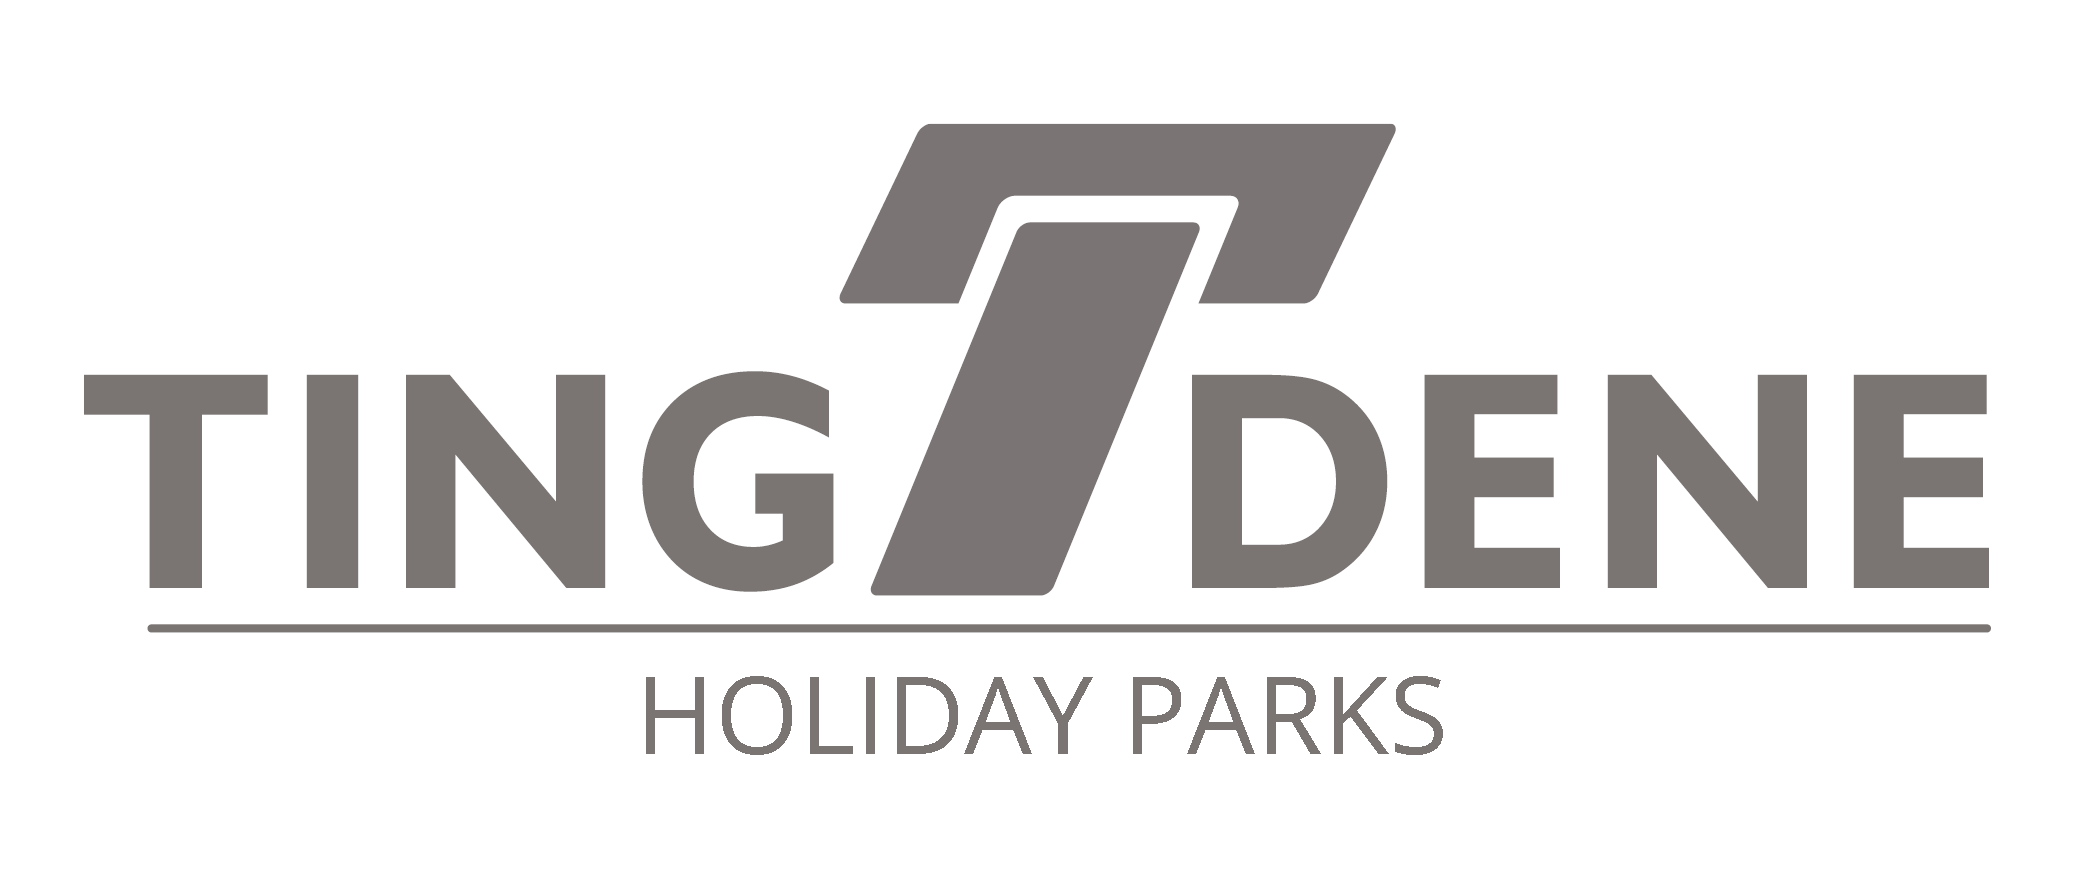 Tingdene Holiday Parks Ltd